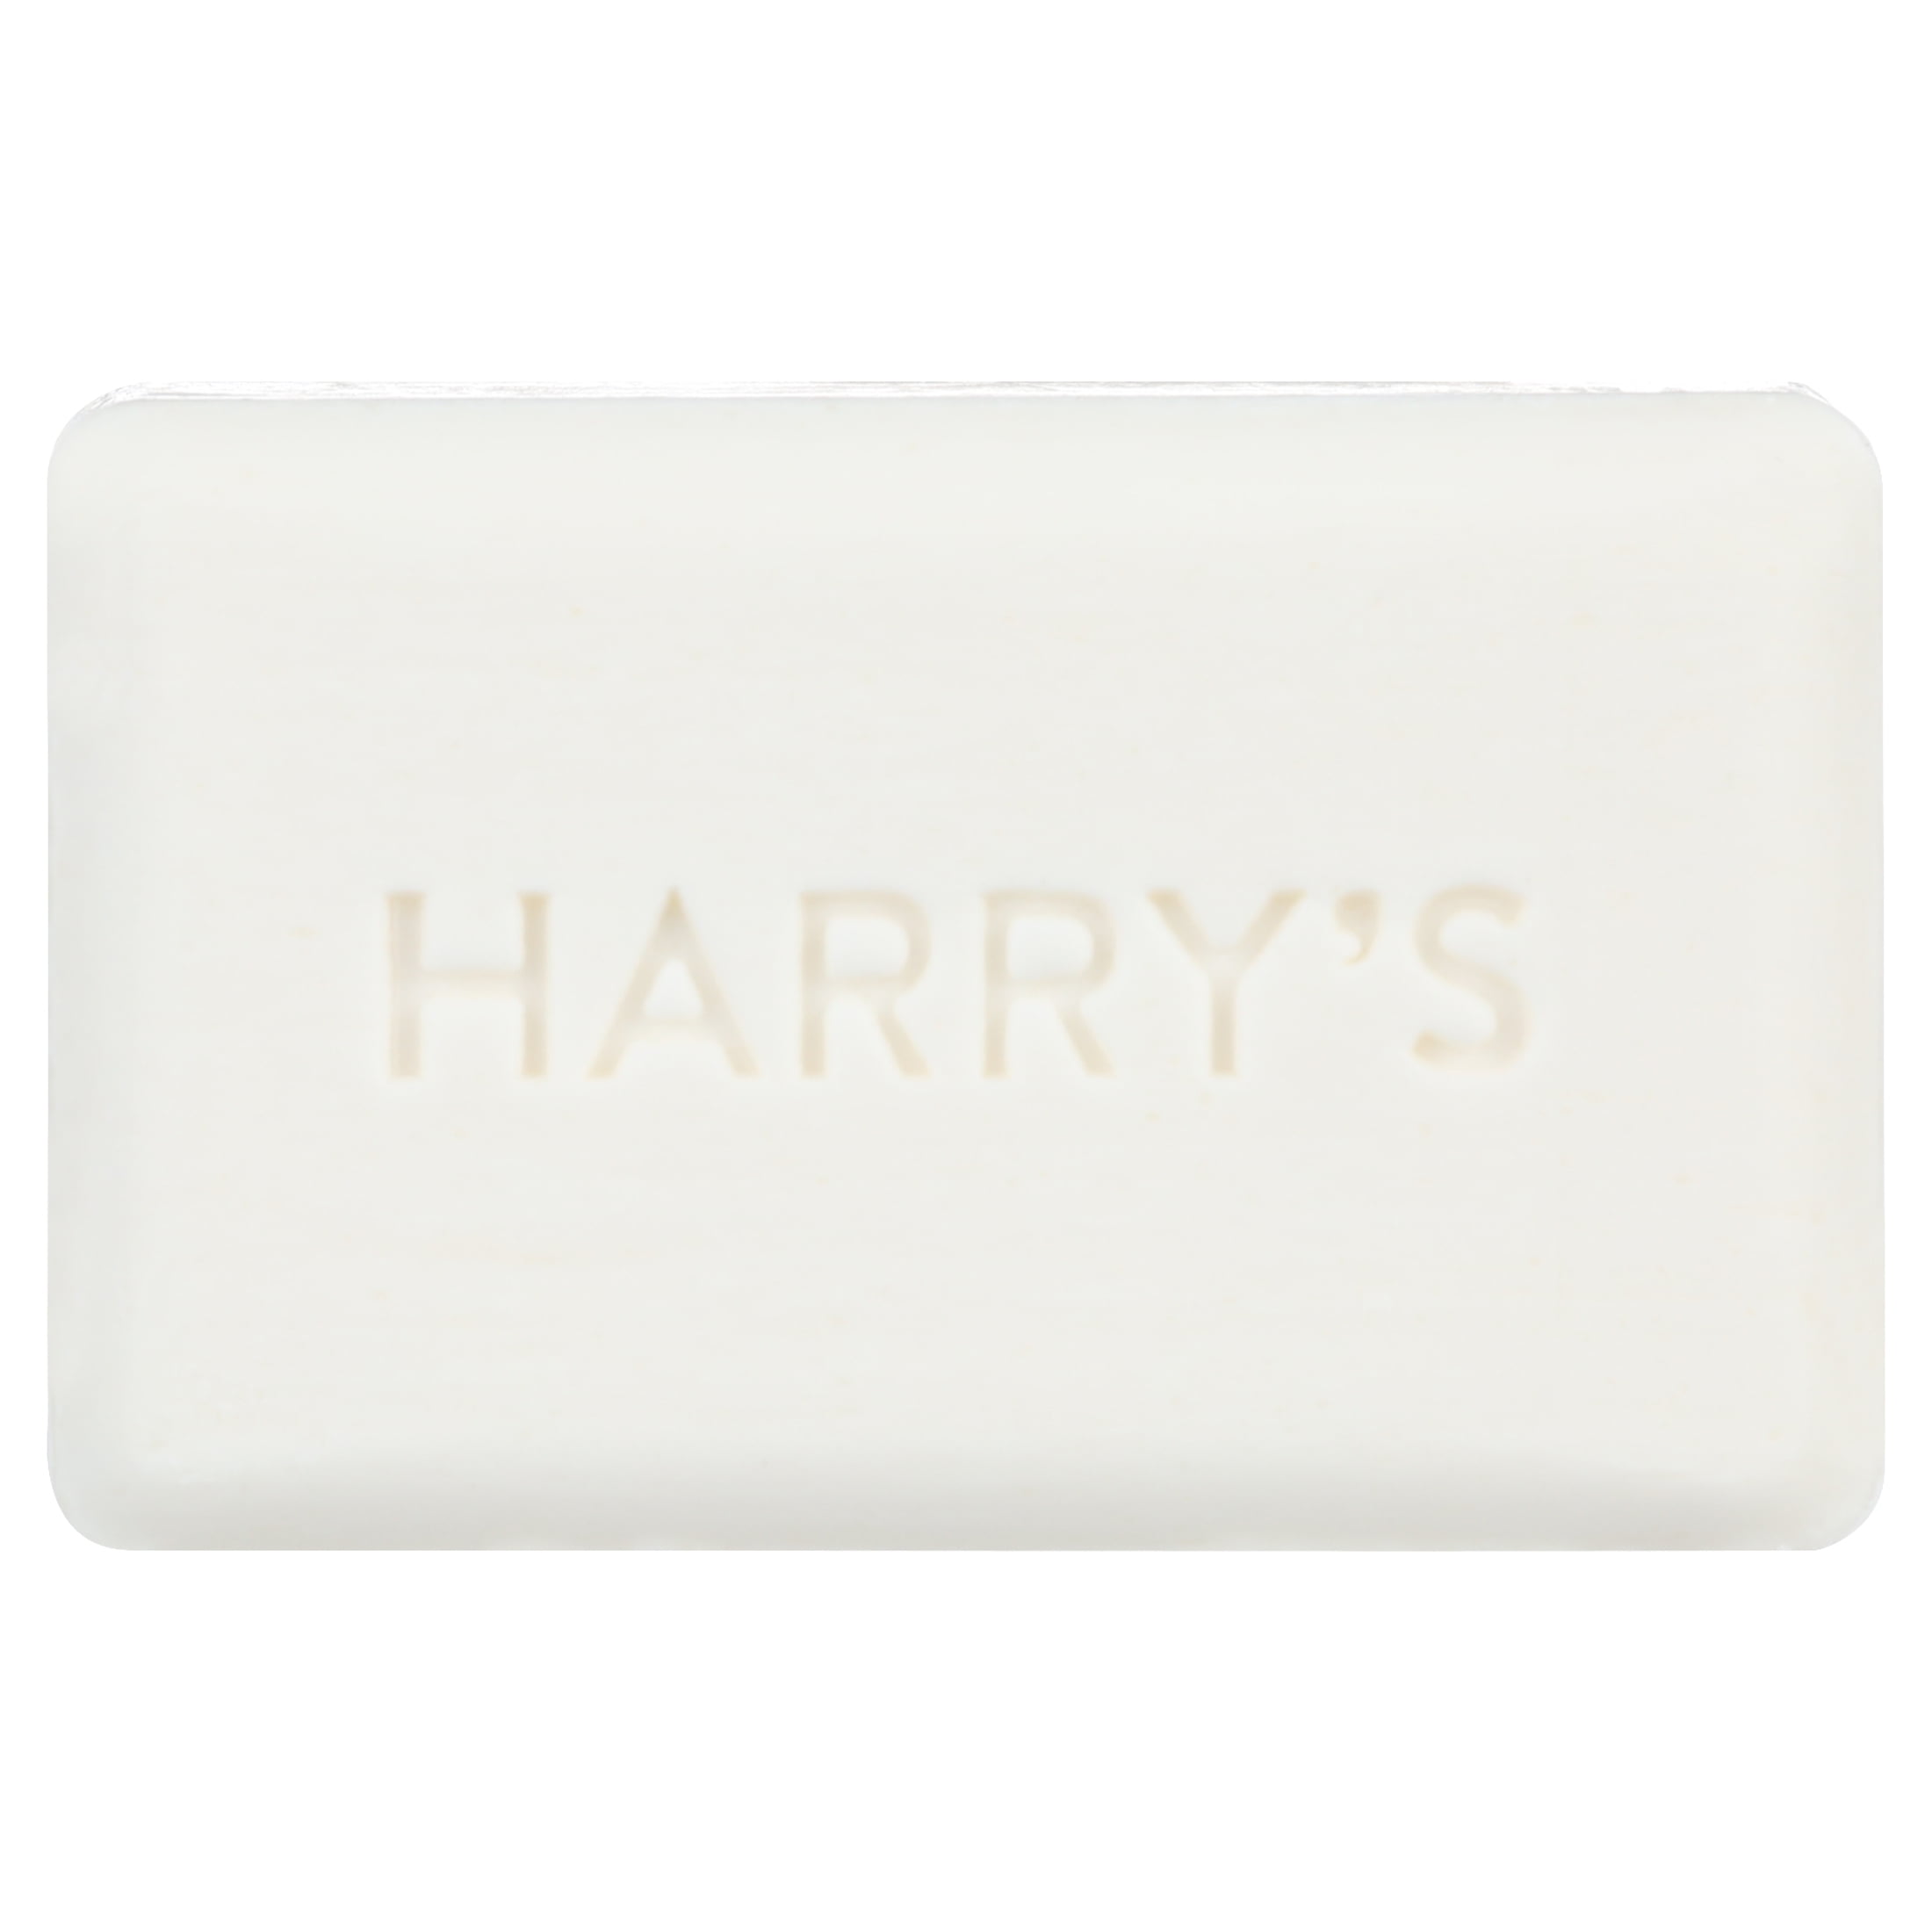 HARRY'S Shiso Bar Soap (3-PACK) 5 oz Fresh Herbs (New)